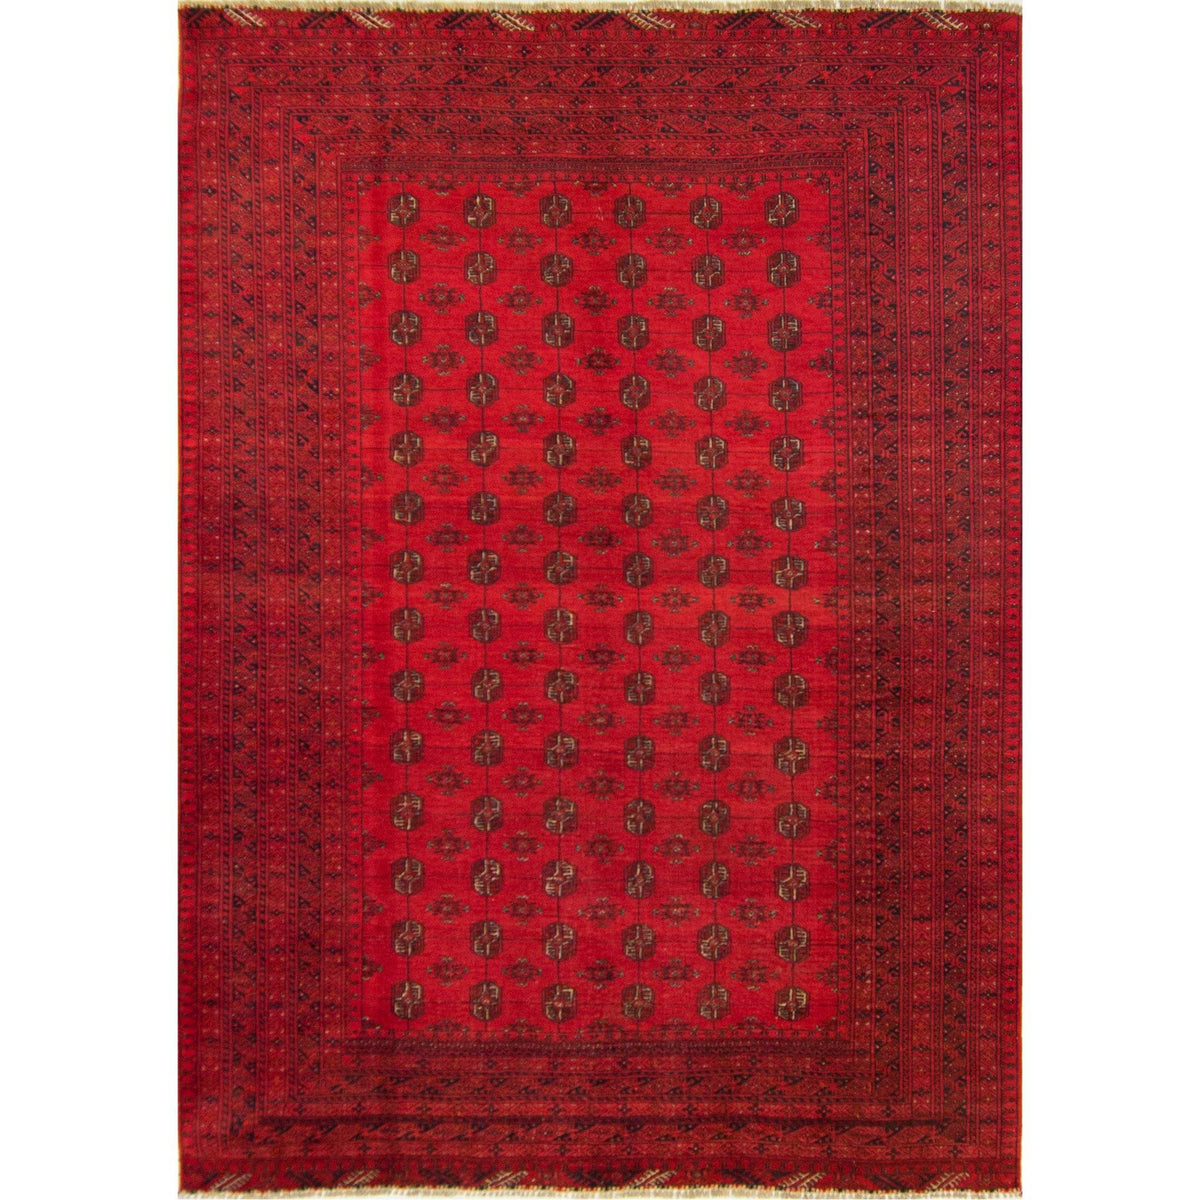 Fine Hand-knotted 100% Wool Afghani Turkmen Vintages Rug 219cm x 306cm